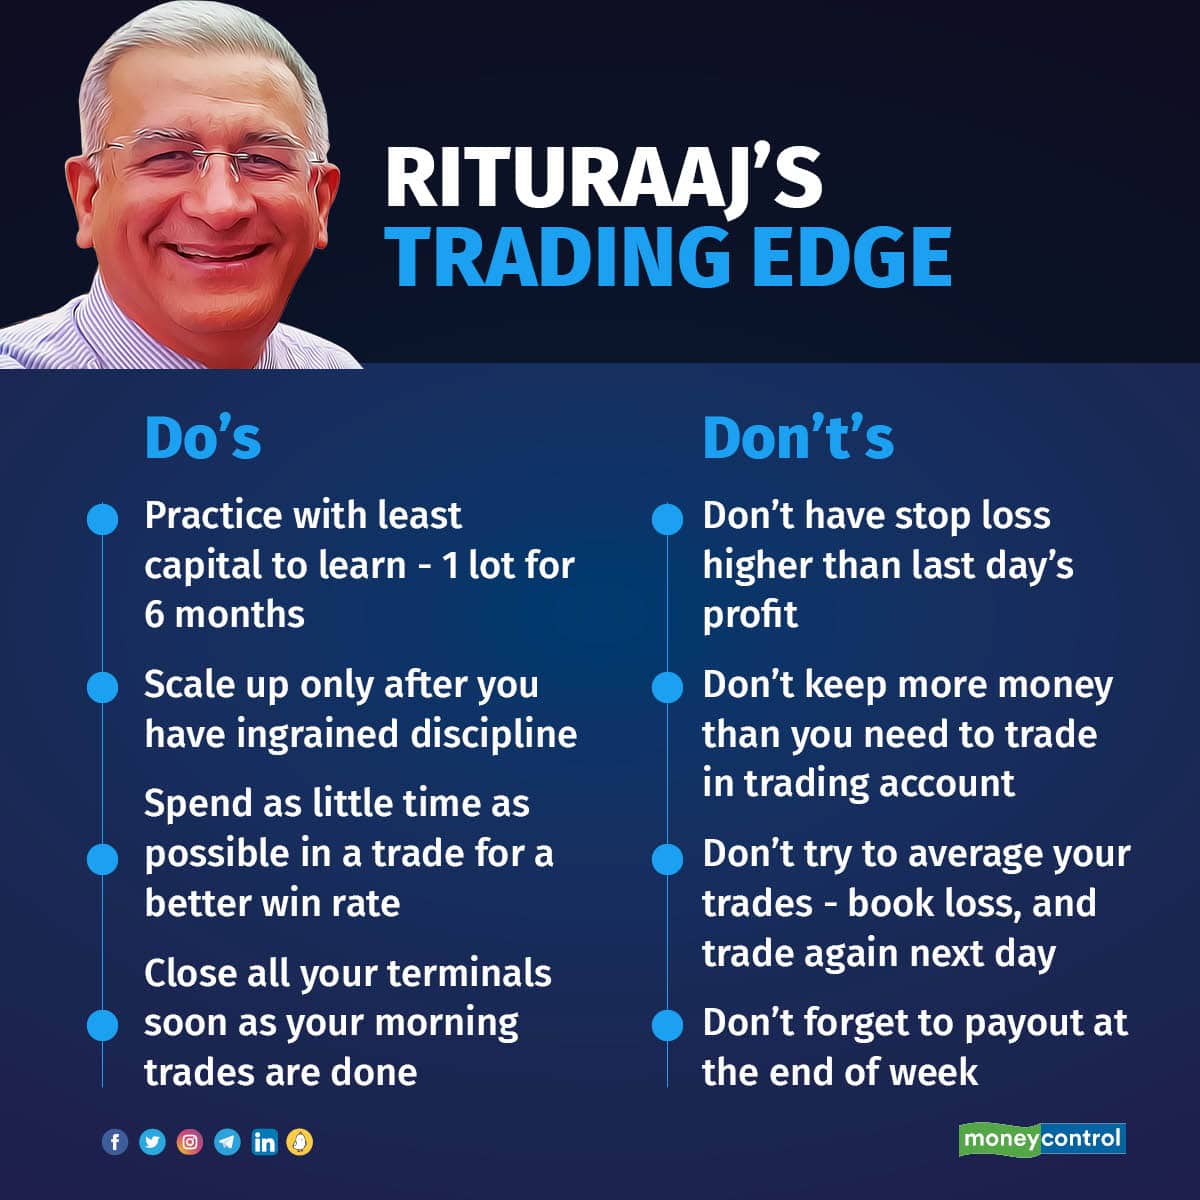 Rituraaj’s Trading Edge